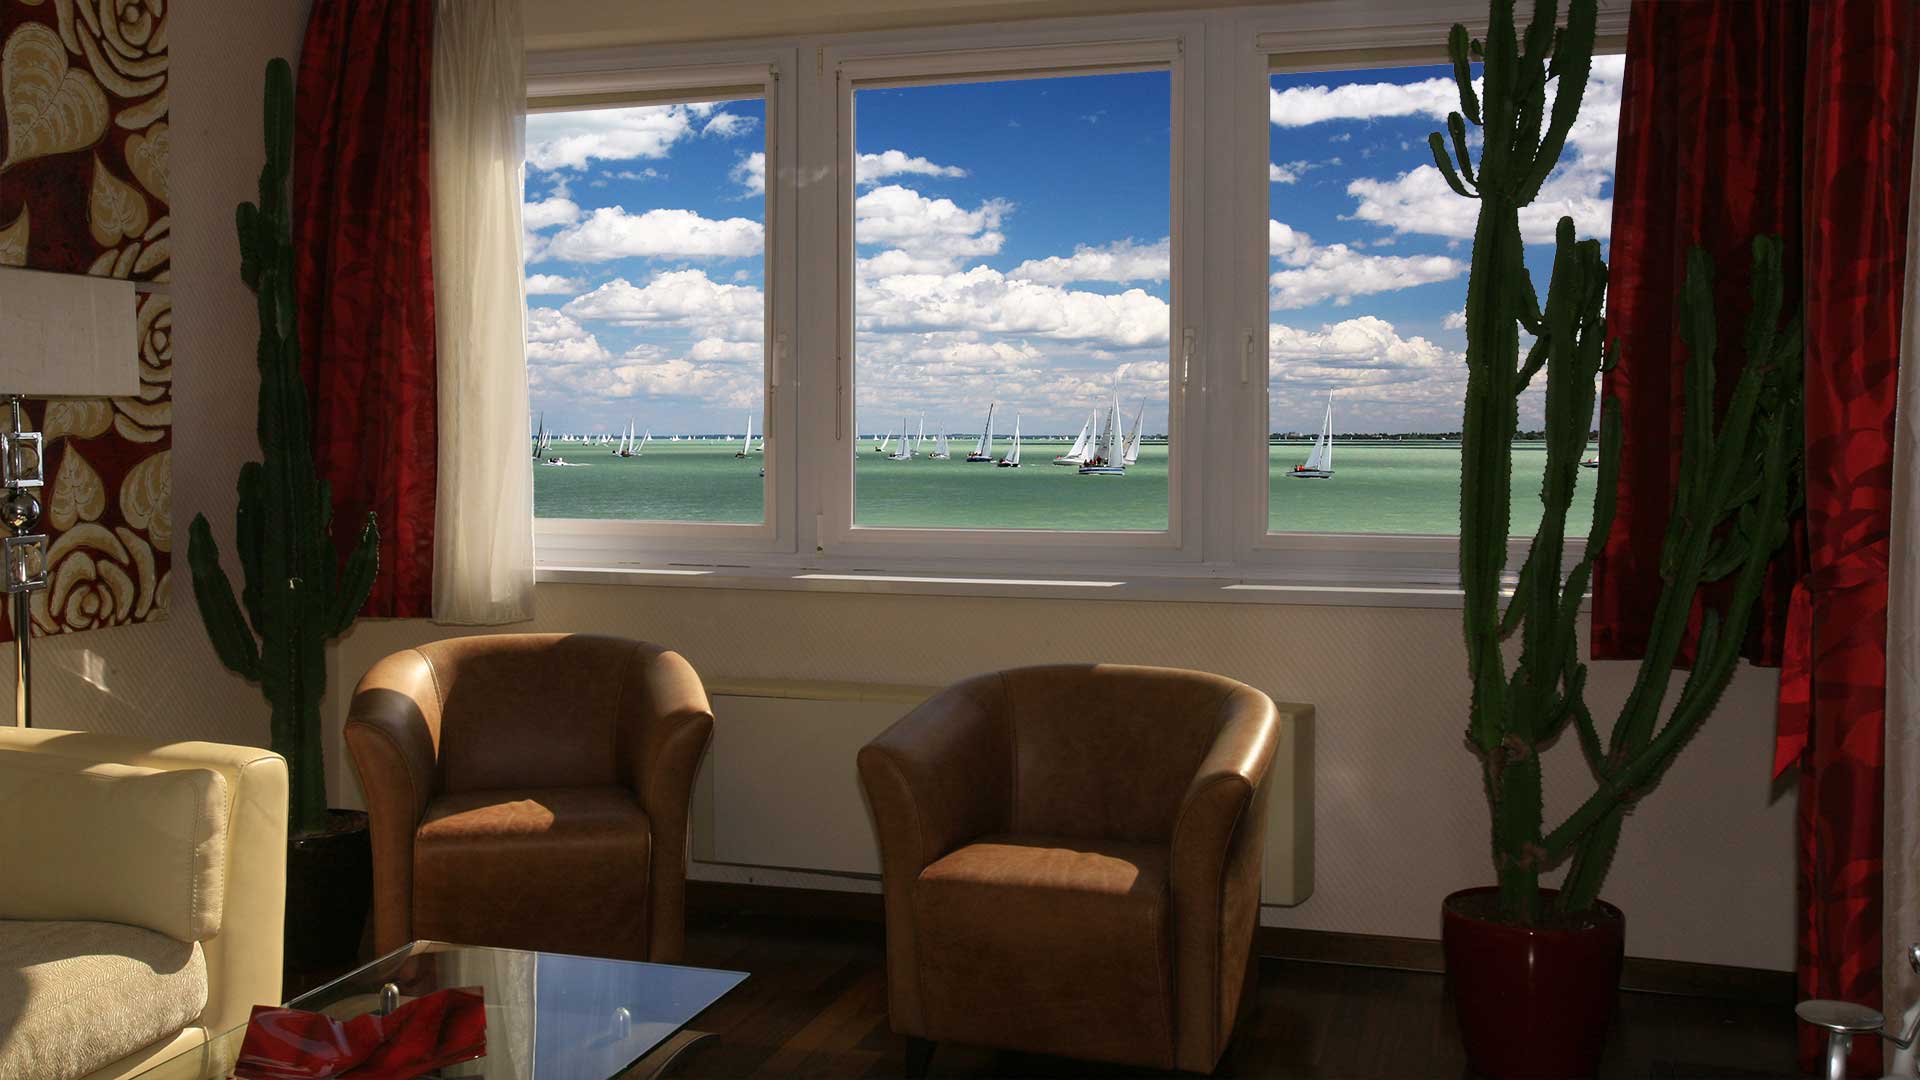 A közvetlen vízparti ingatlan ablakából élvezhető a Kék-szalag vitorlásverseny